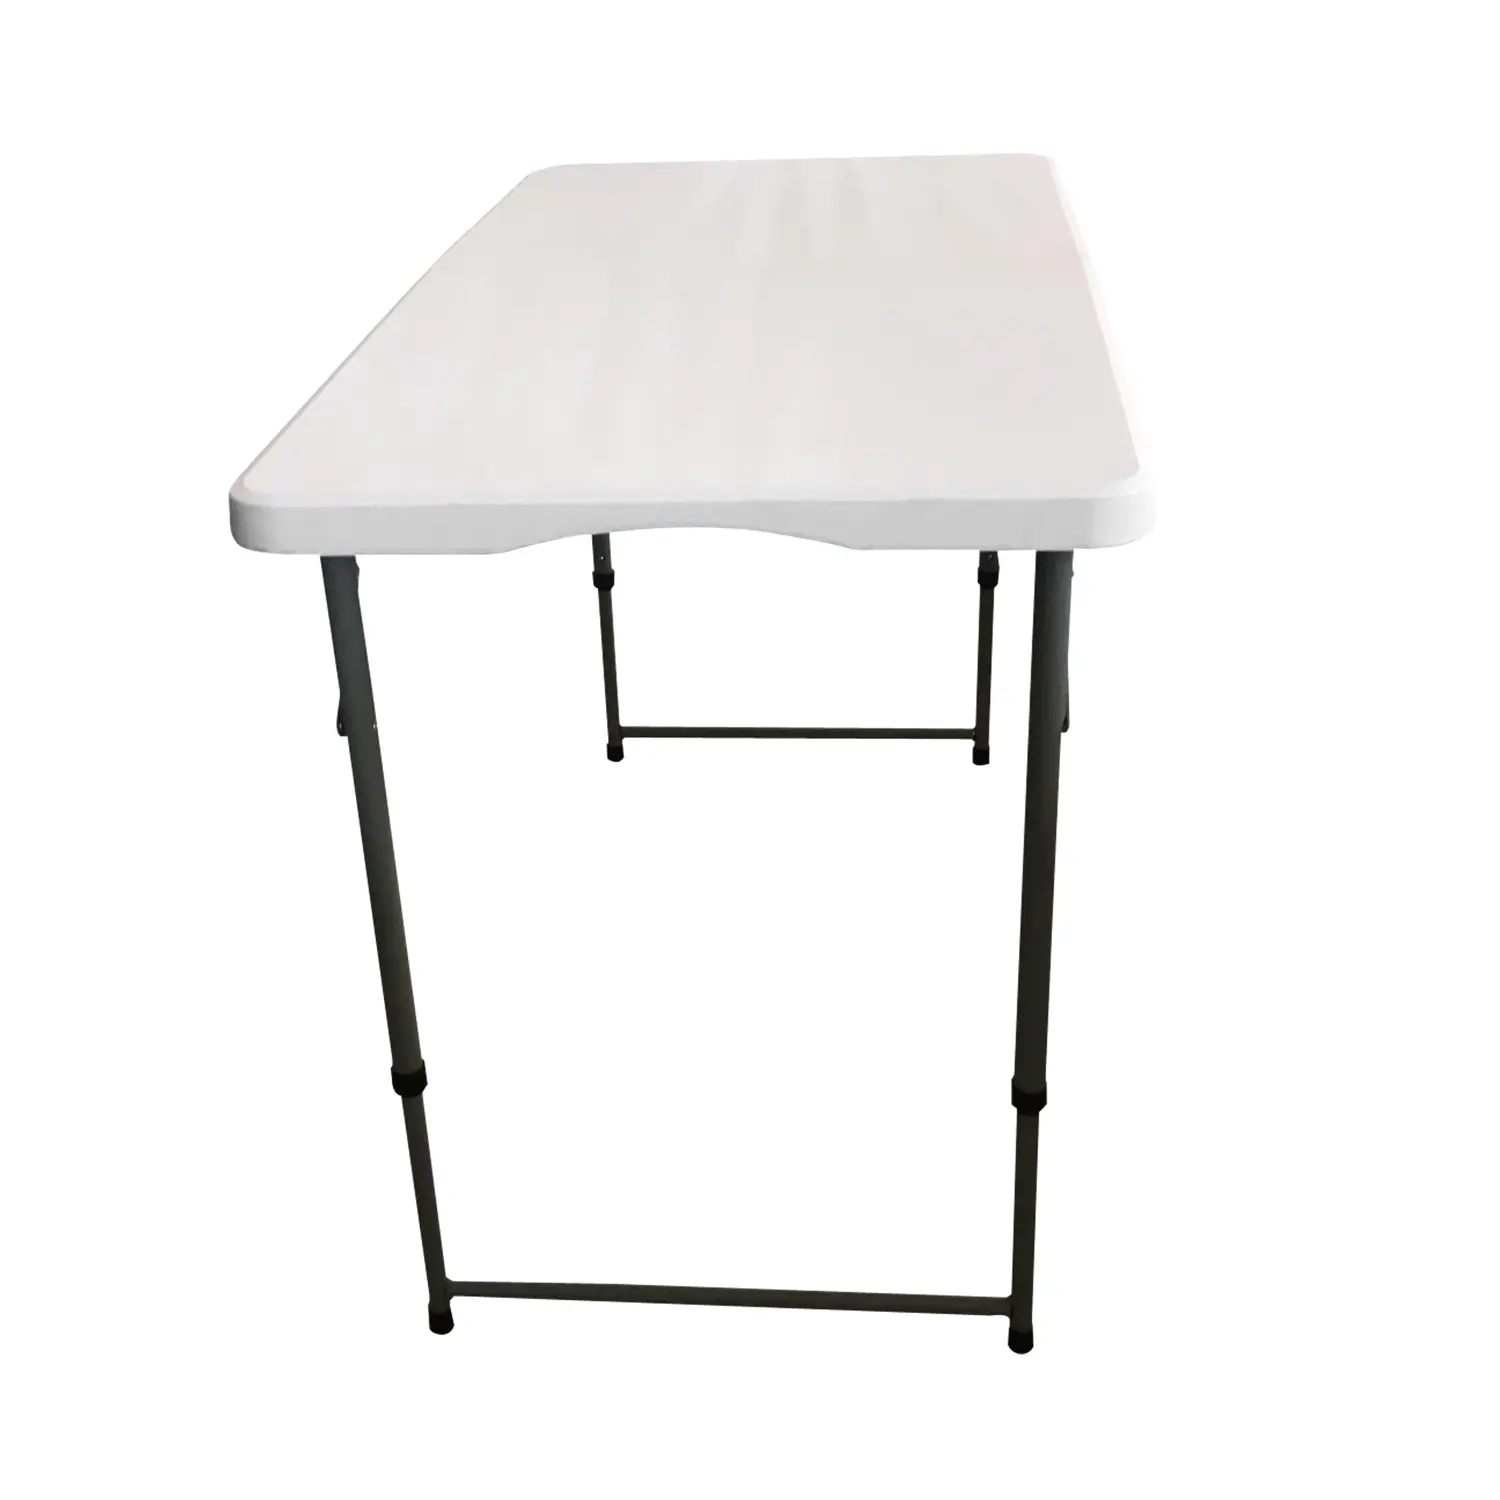 Összecsukható kemping asztal, kerti asztal 120x60cm fehér (KL-Z120A)